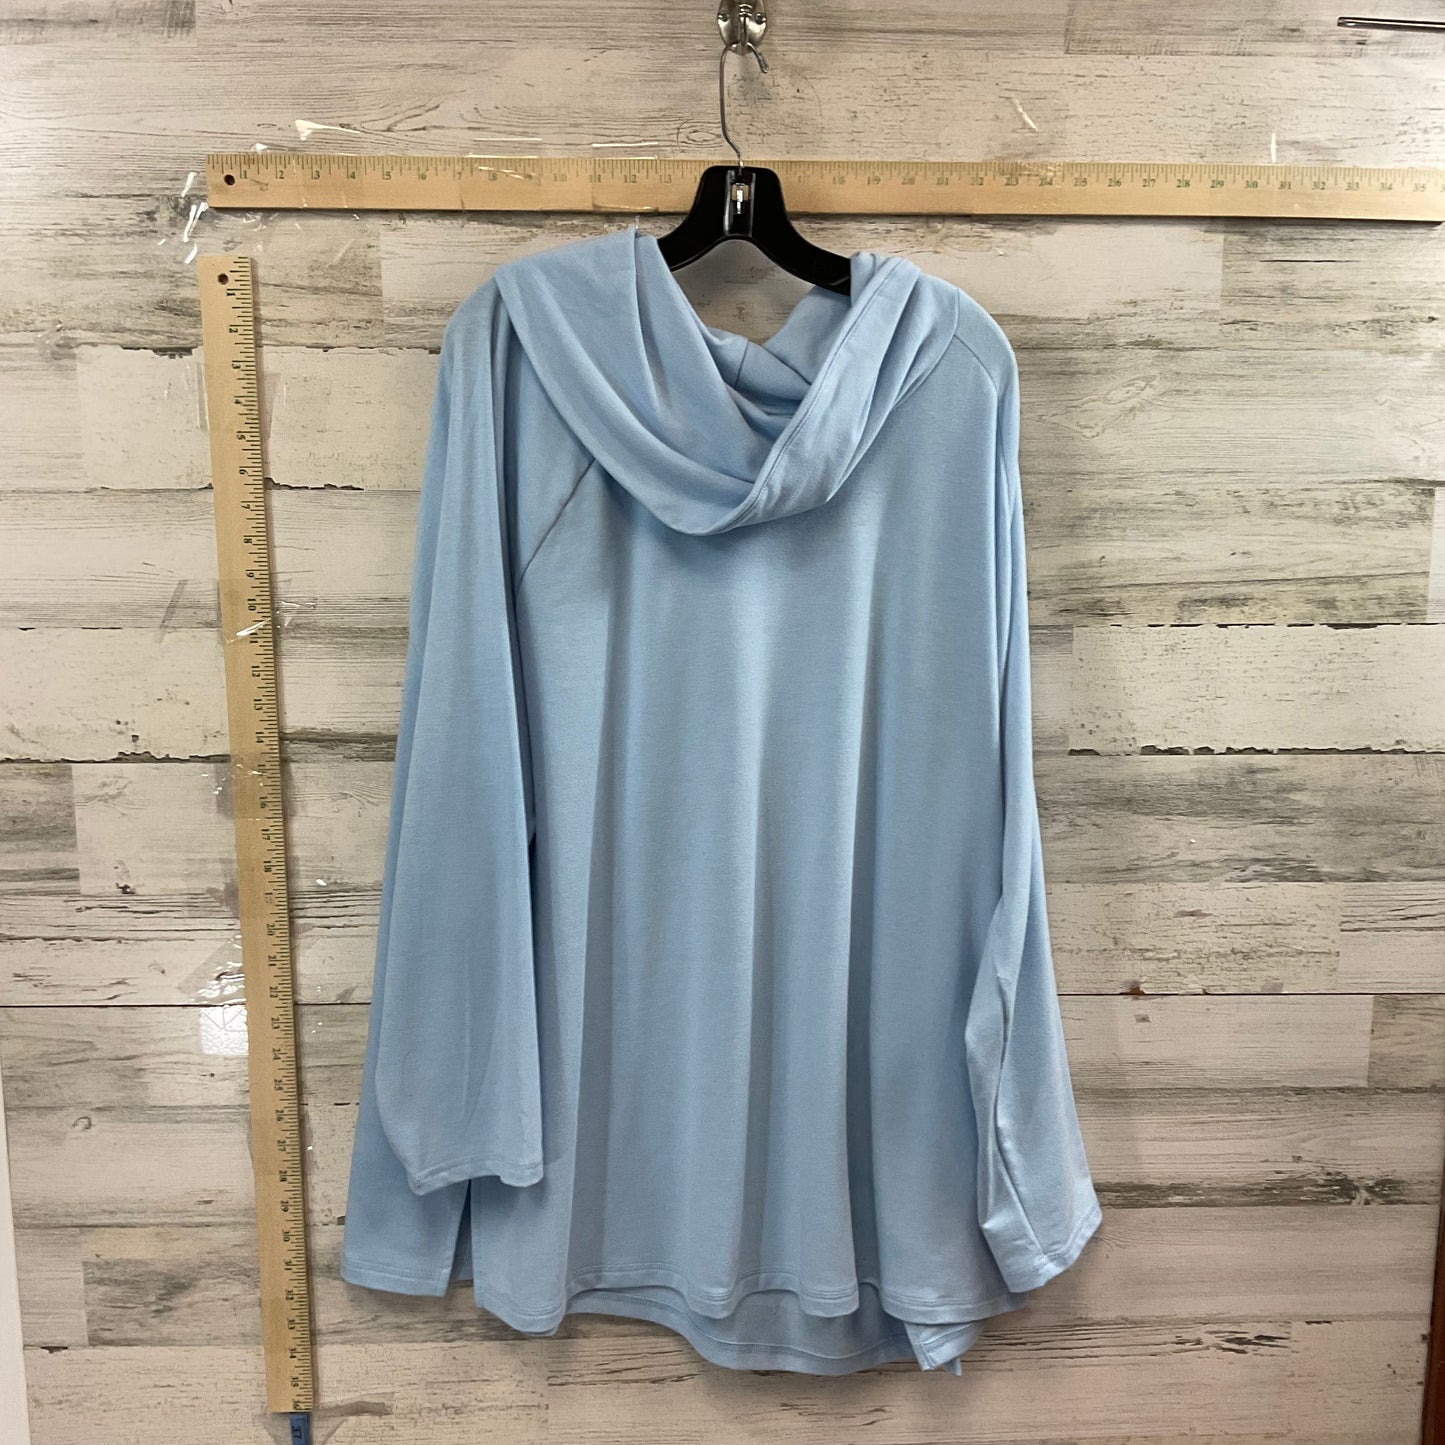 Blue Top Long Sleeve Karen Scott, Size 4x